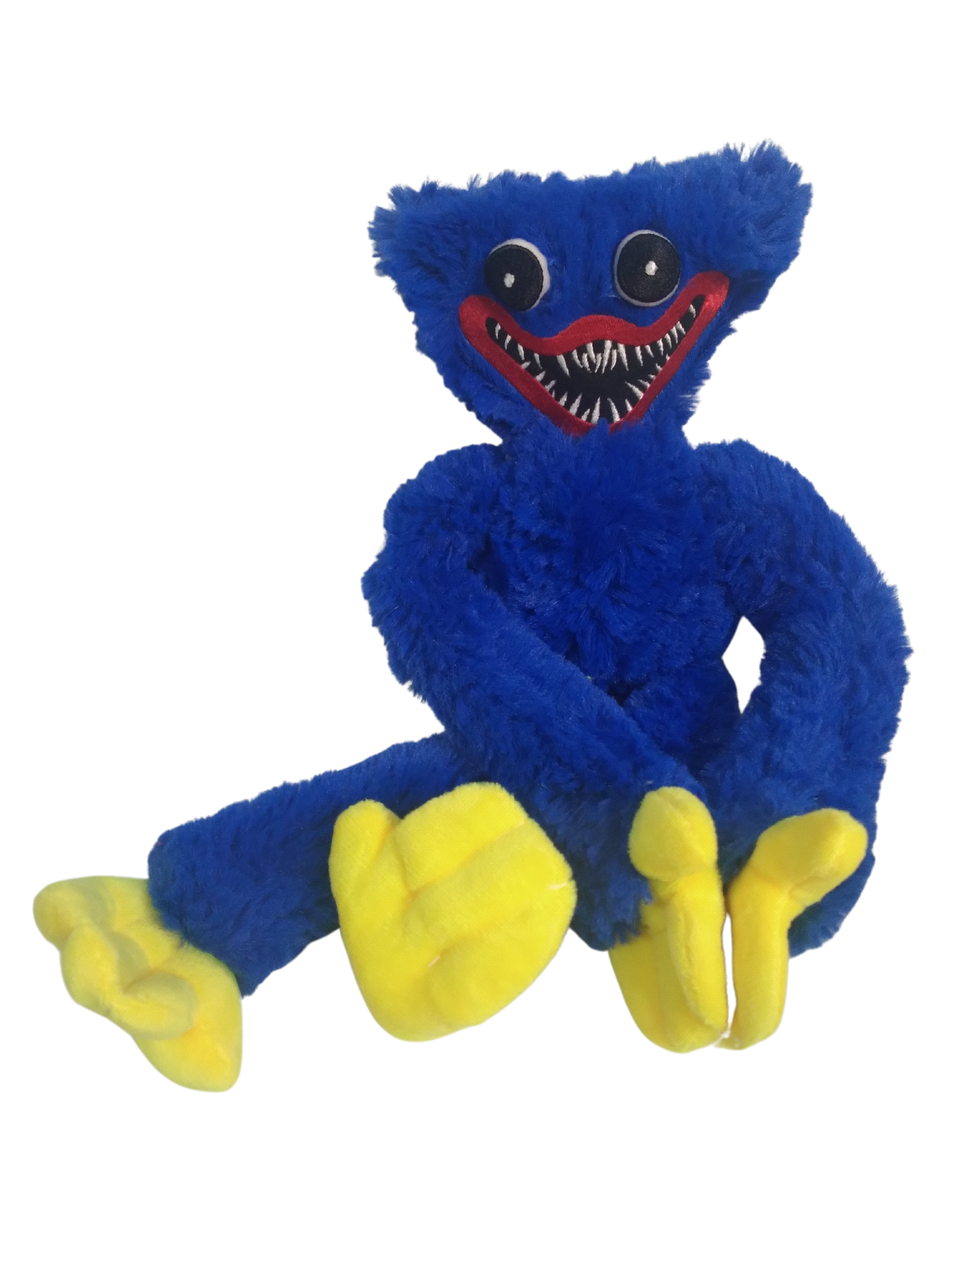 Мягкая игрушка Хаги Ваги (Huggy Wuggy) Кукла Хаги Ваги,синий